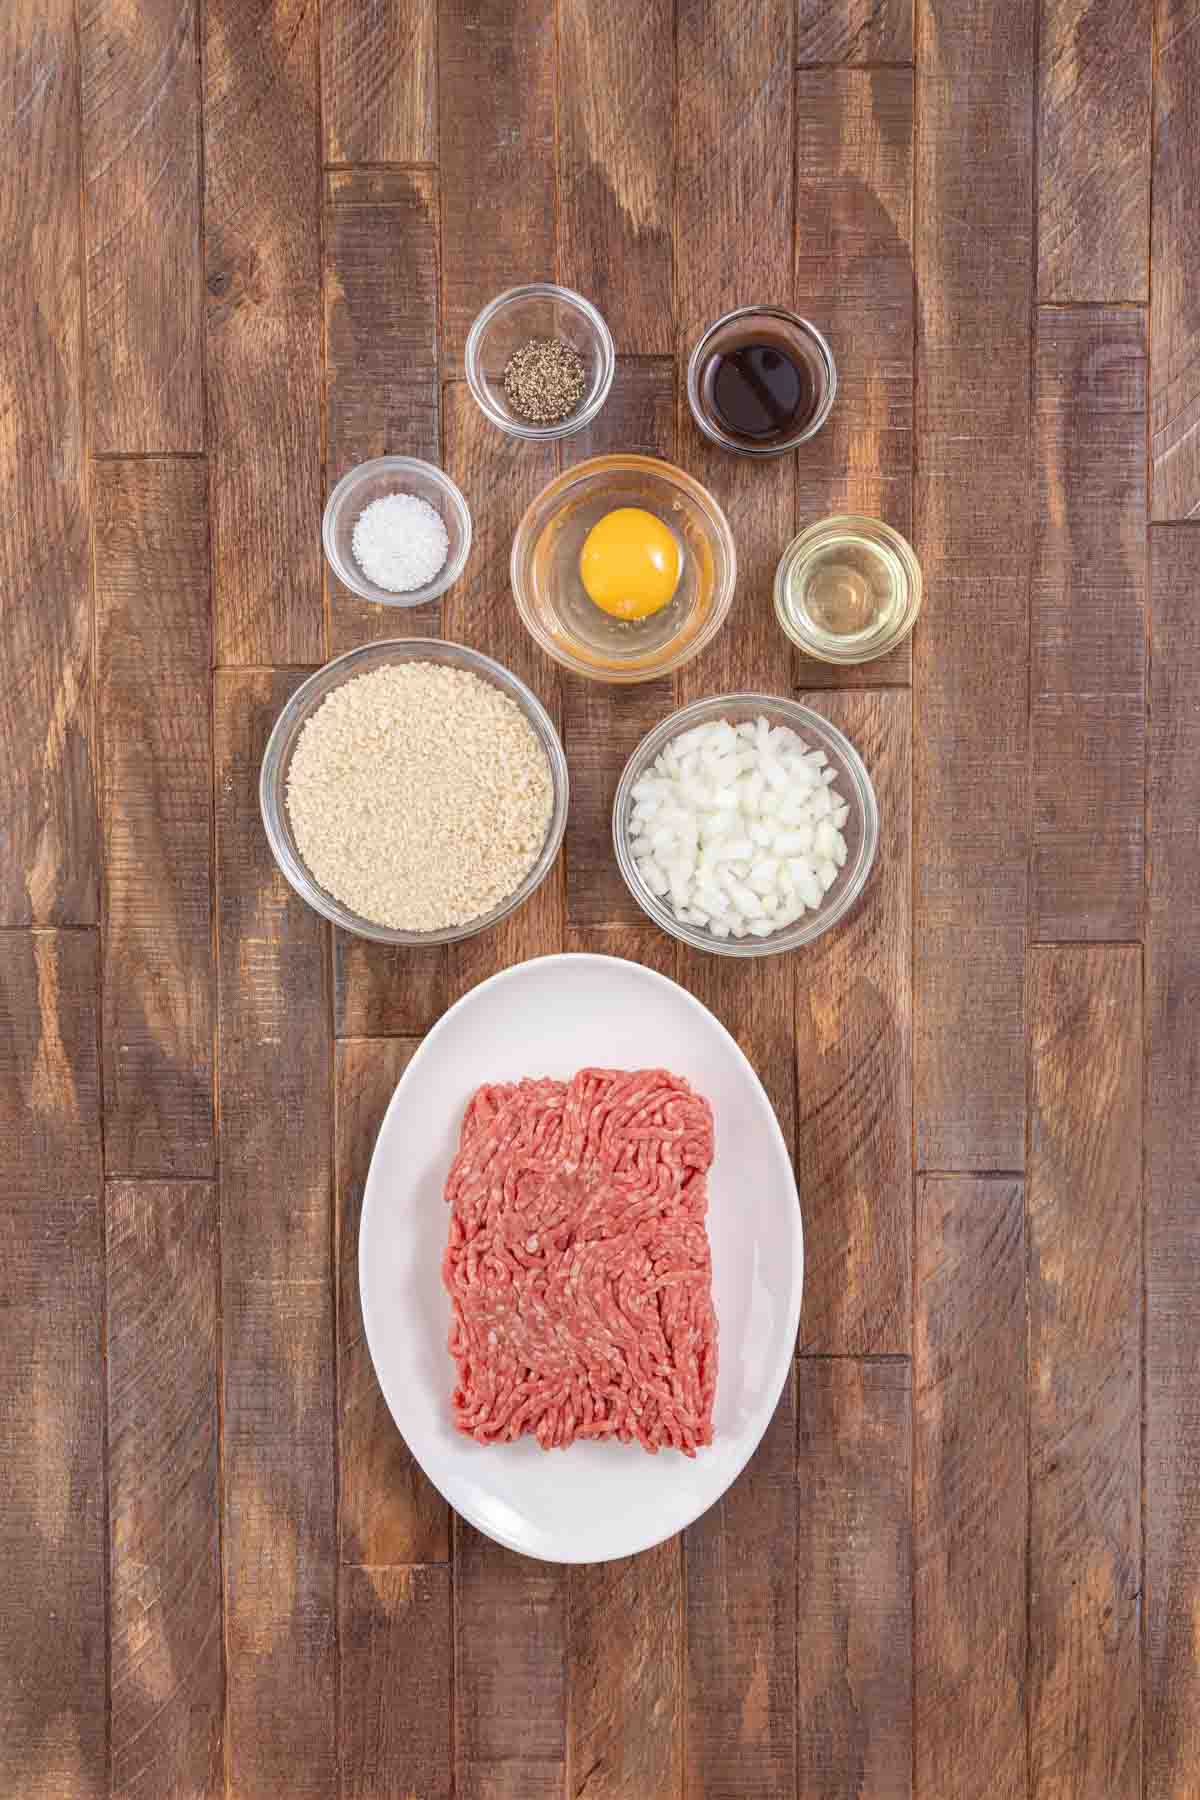 Chopped Steak ingredients in separate bowls